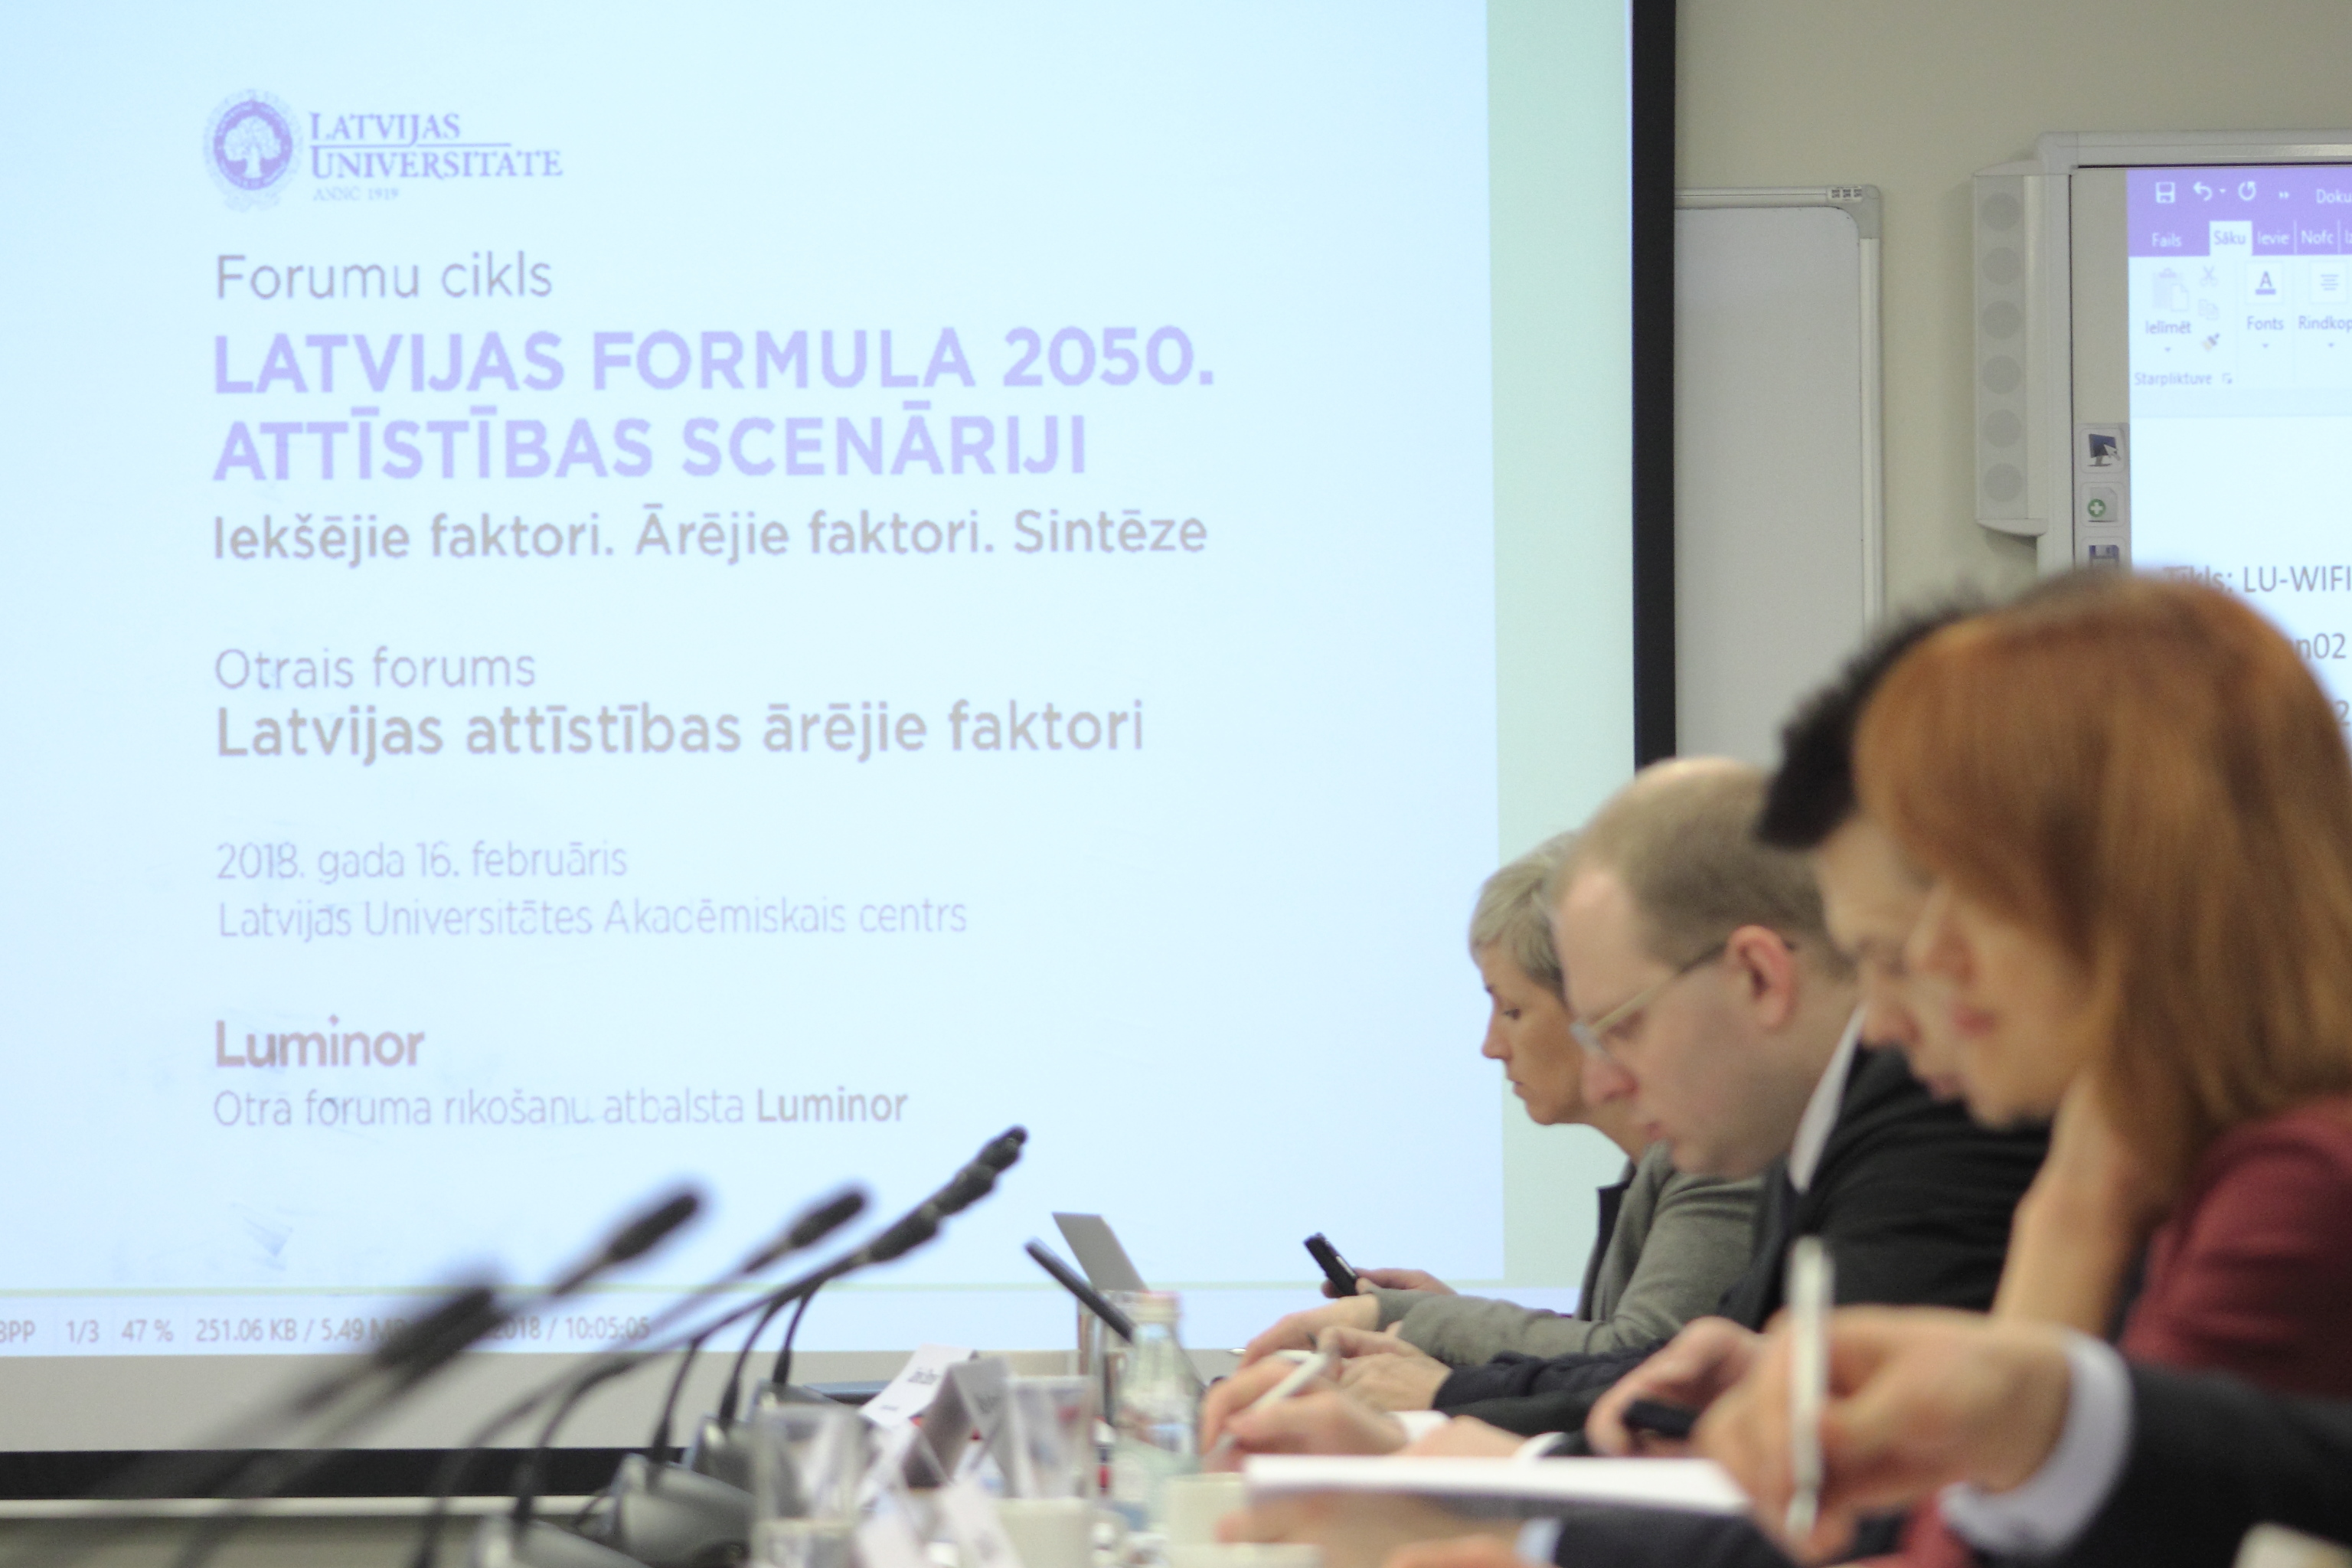 Forumu cikla “Latvijas formula 2050” eksperti: Neesam bāreņu tauta; mūsu mērķis – pacelt pašapziņu